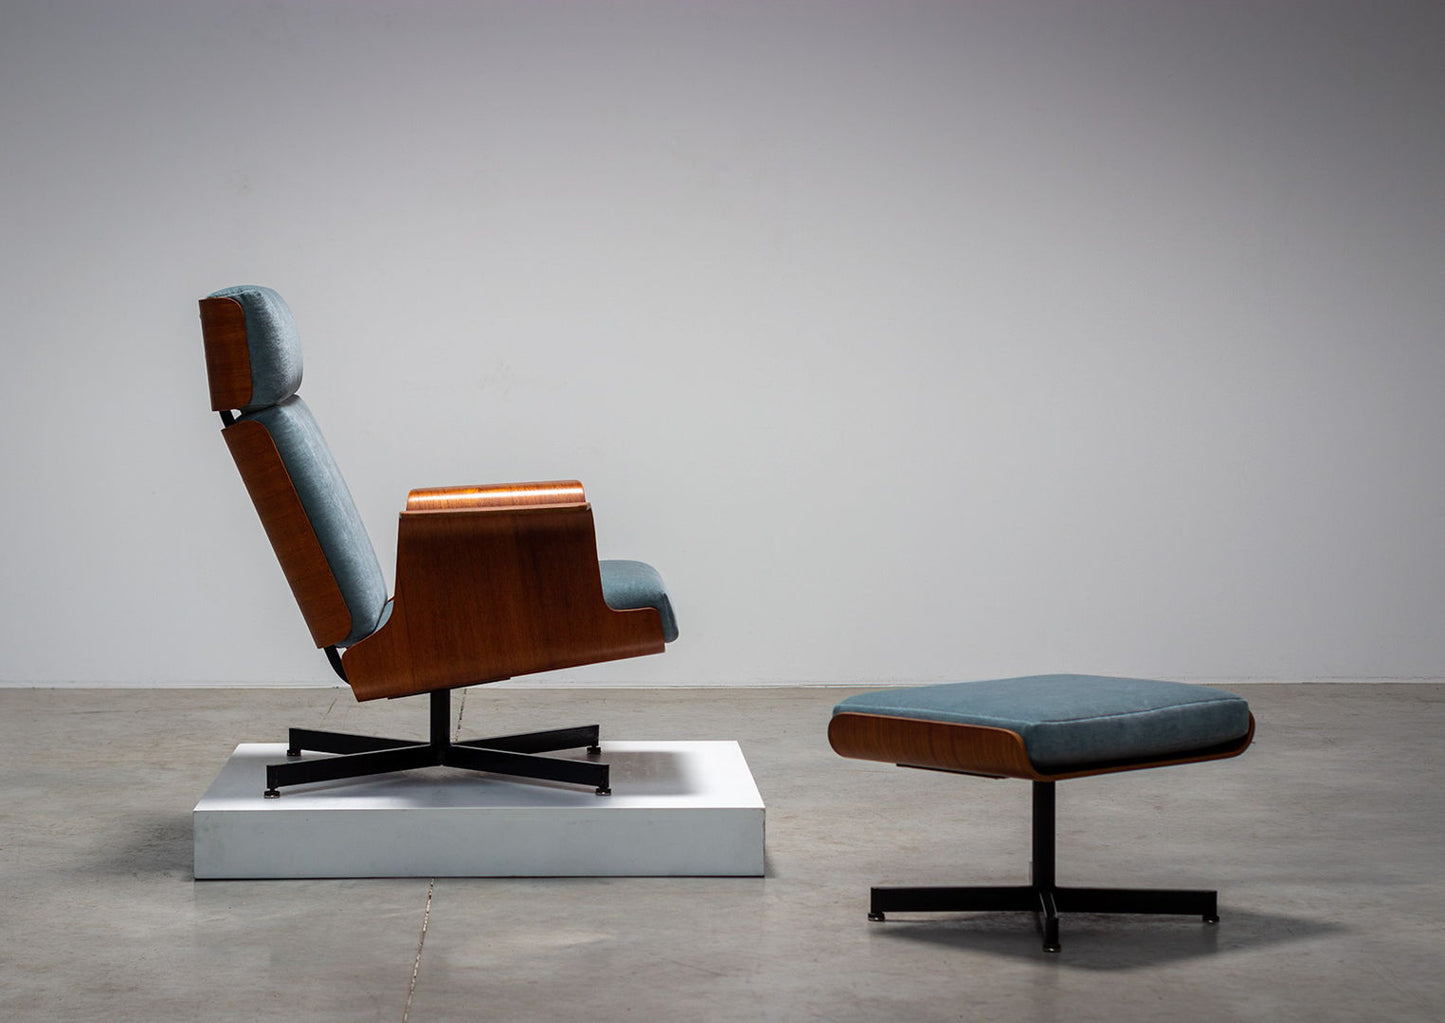 Pierre Guariche teak plywood armchair with ottoman 1960 model Helsinki